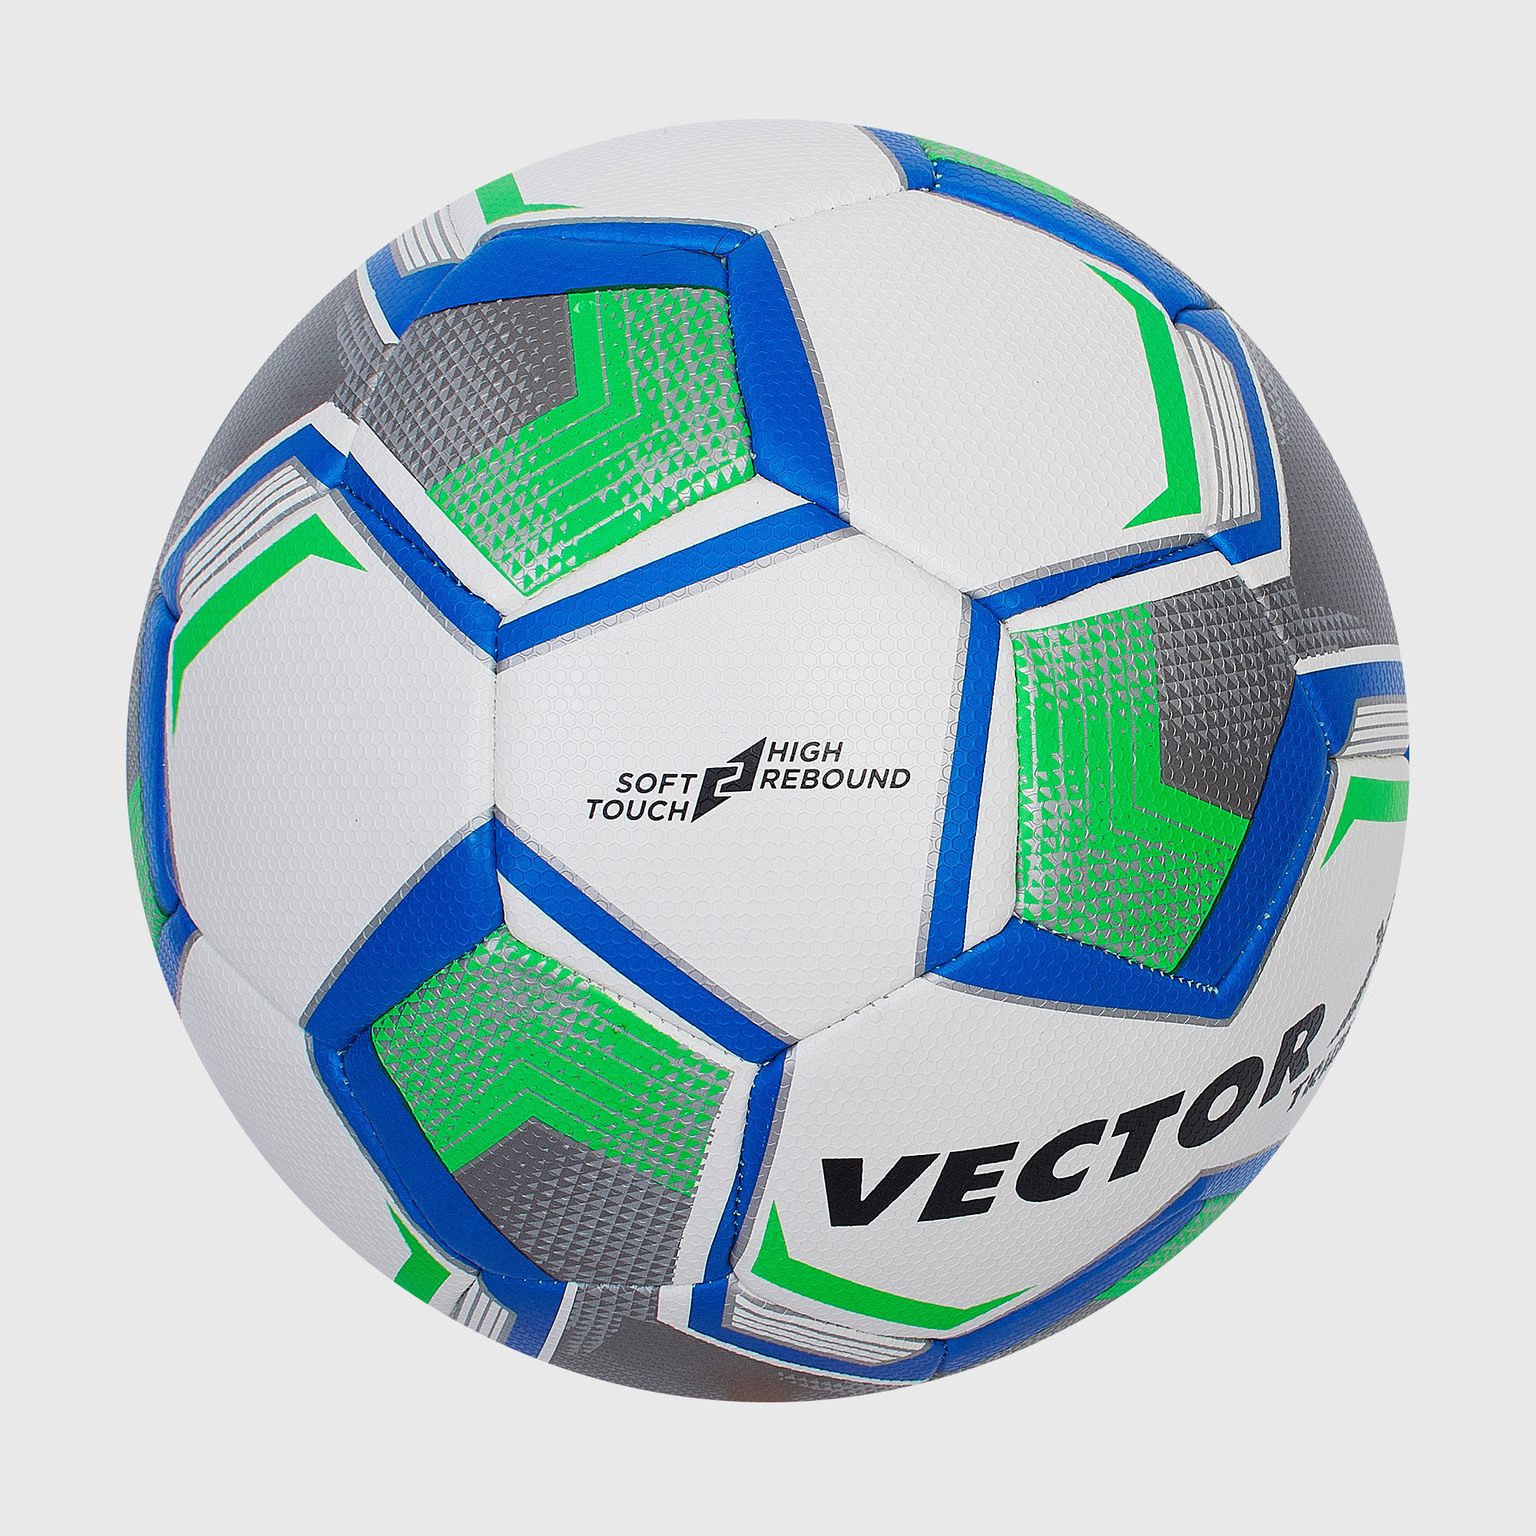 Футбольный мяч Vector Trident Fifa Quality 3514